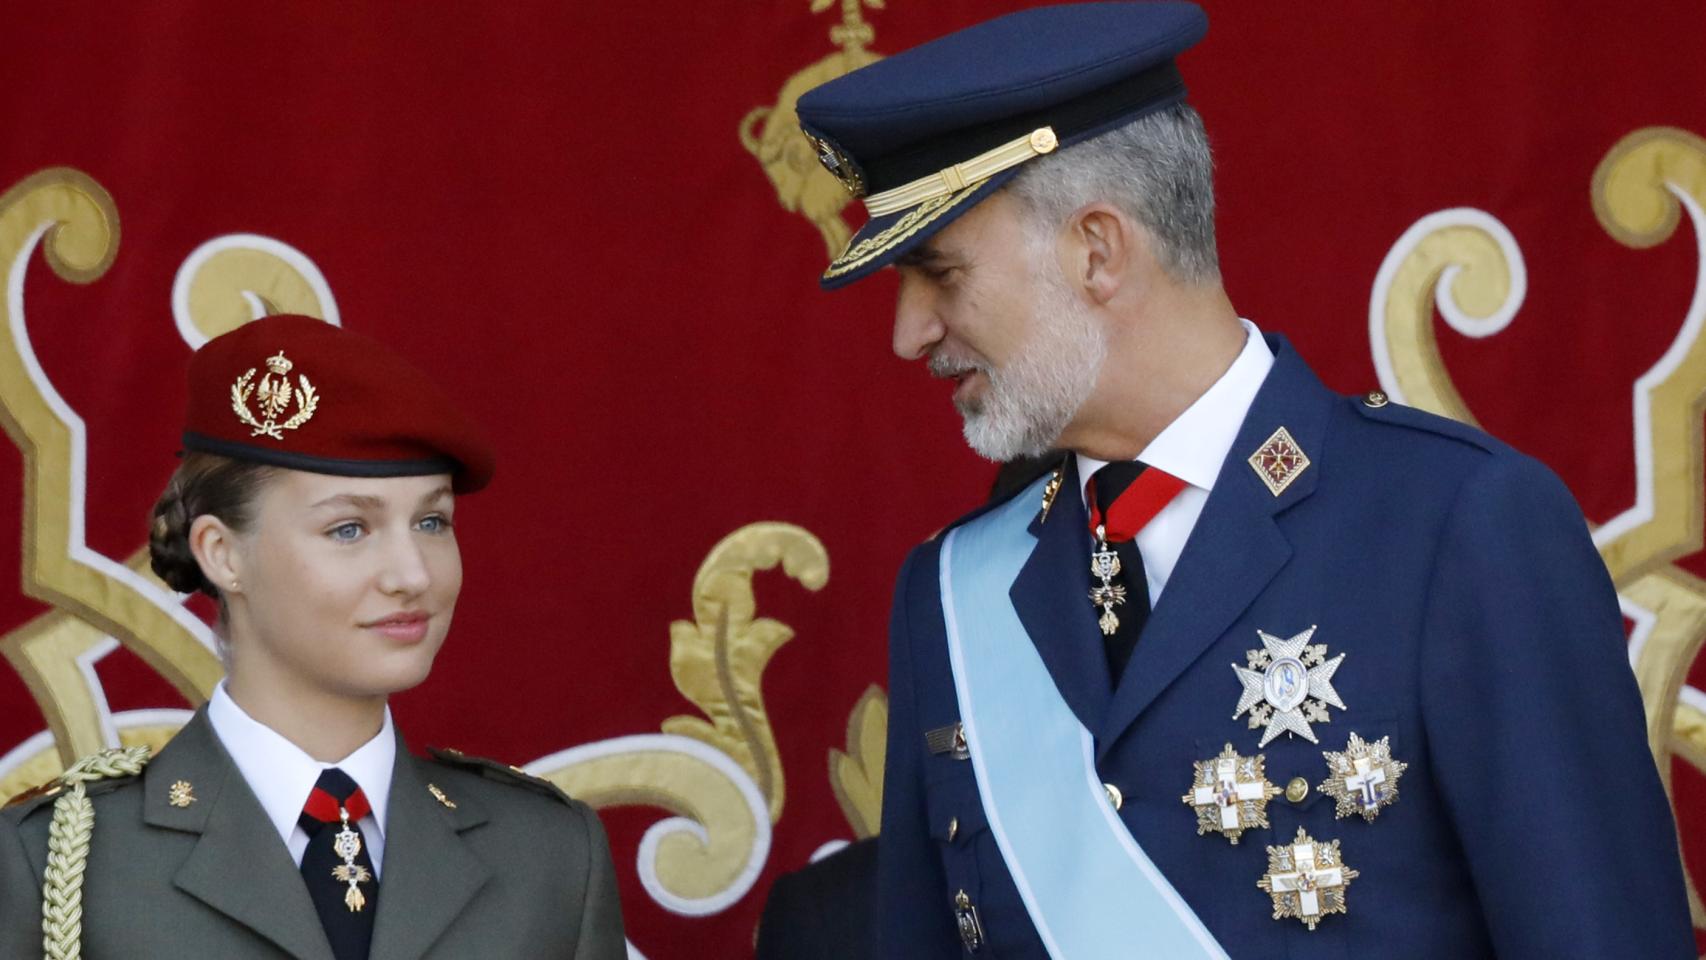 El rey Felipe VI mira con orgullo a su hija, la princesa de Asturias.